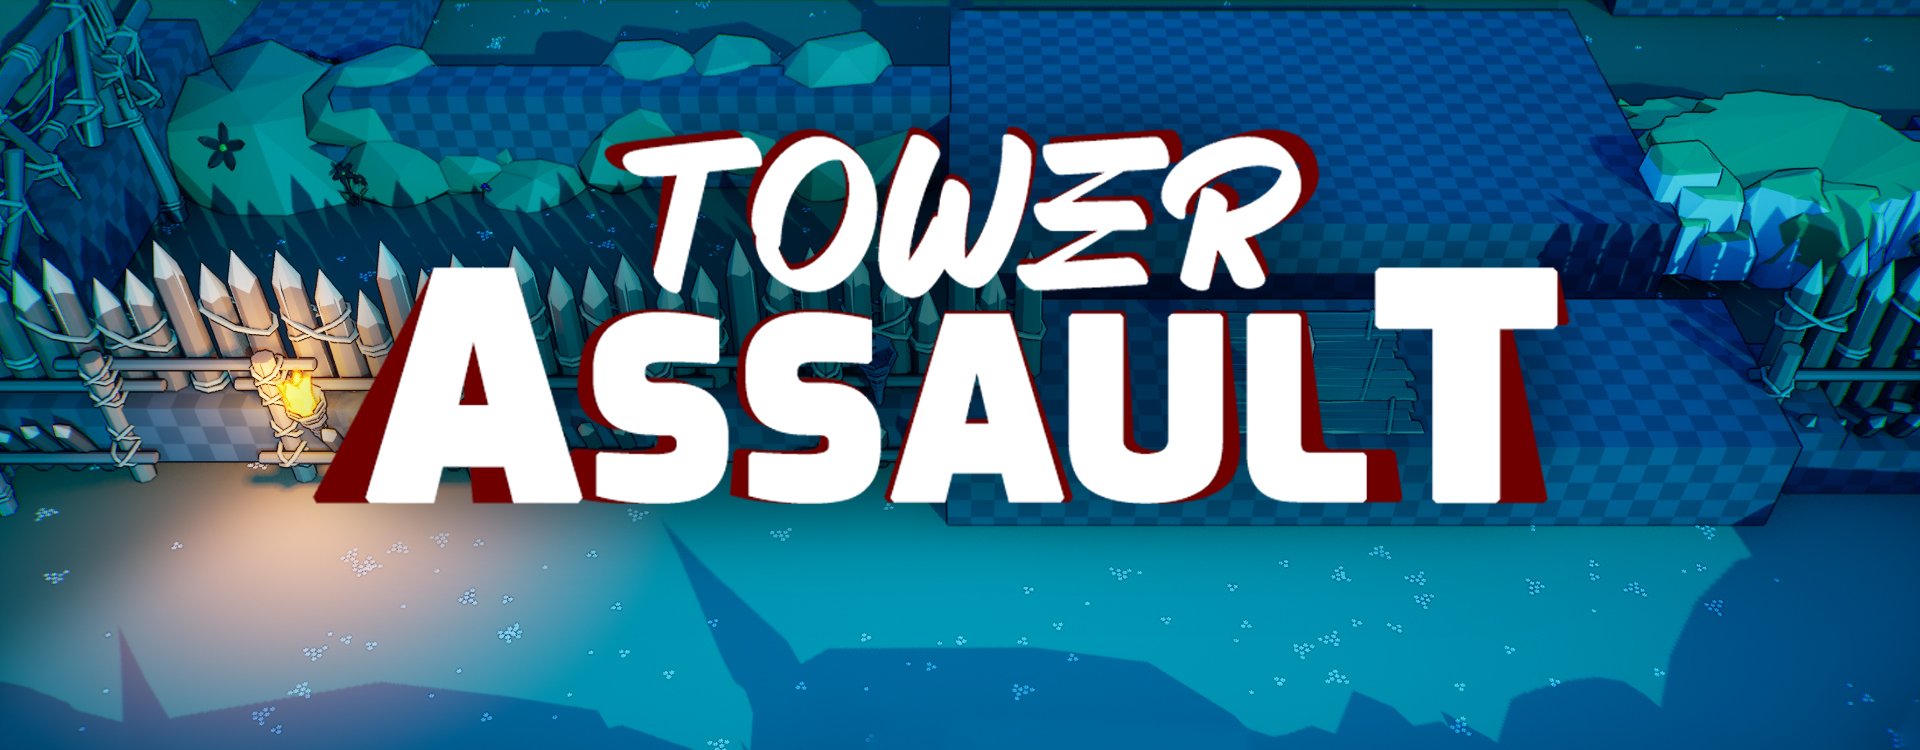 Tower Assault